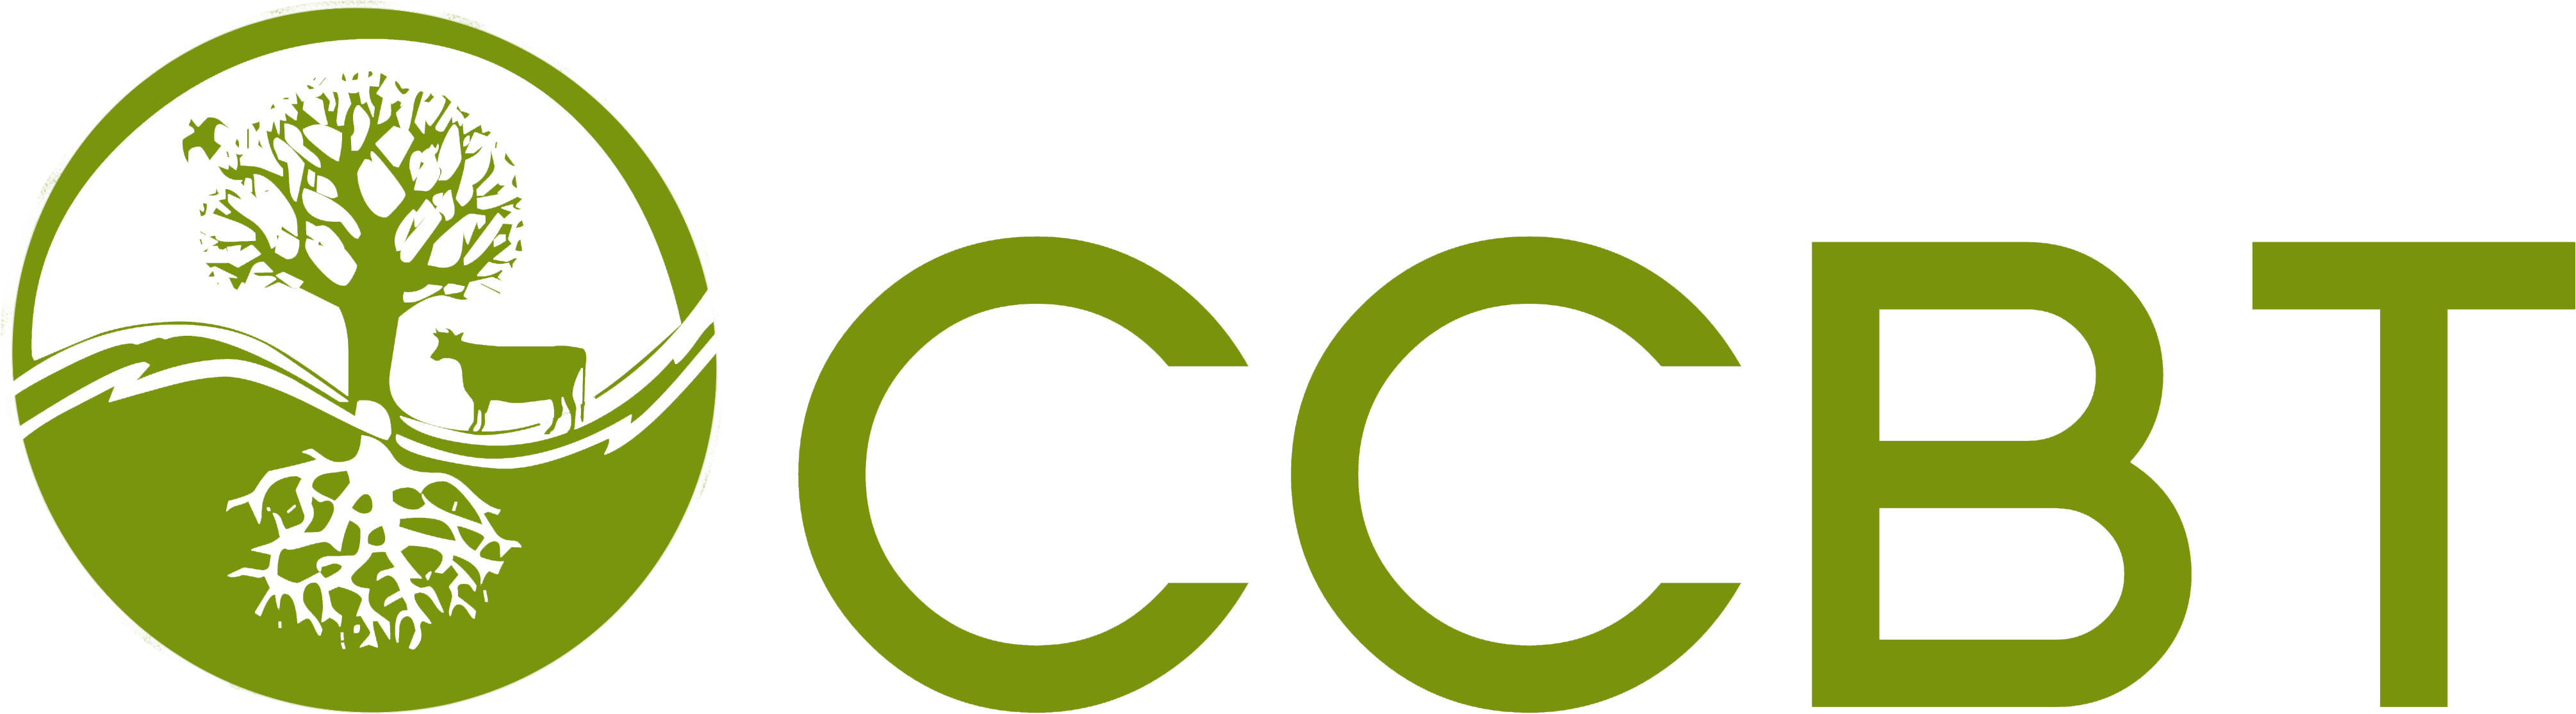 logo ccbt